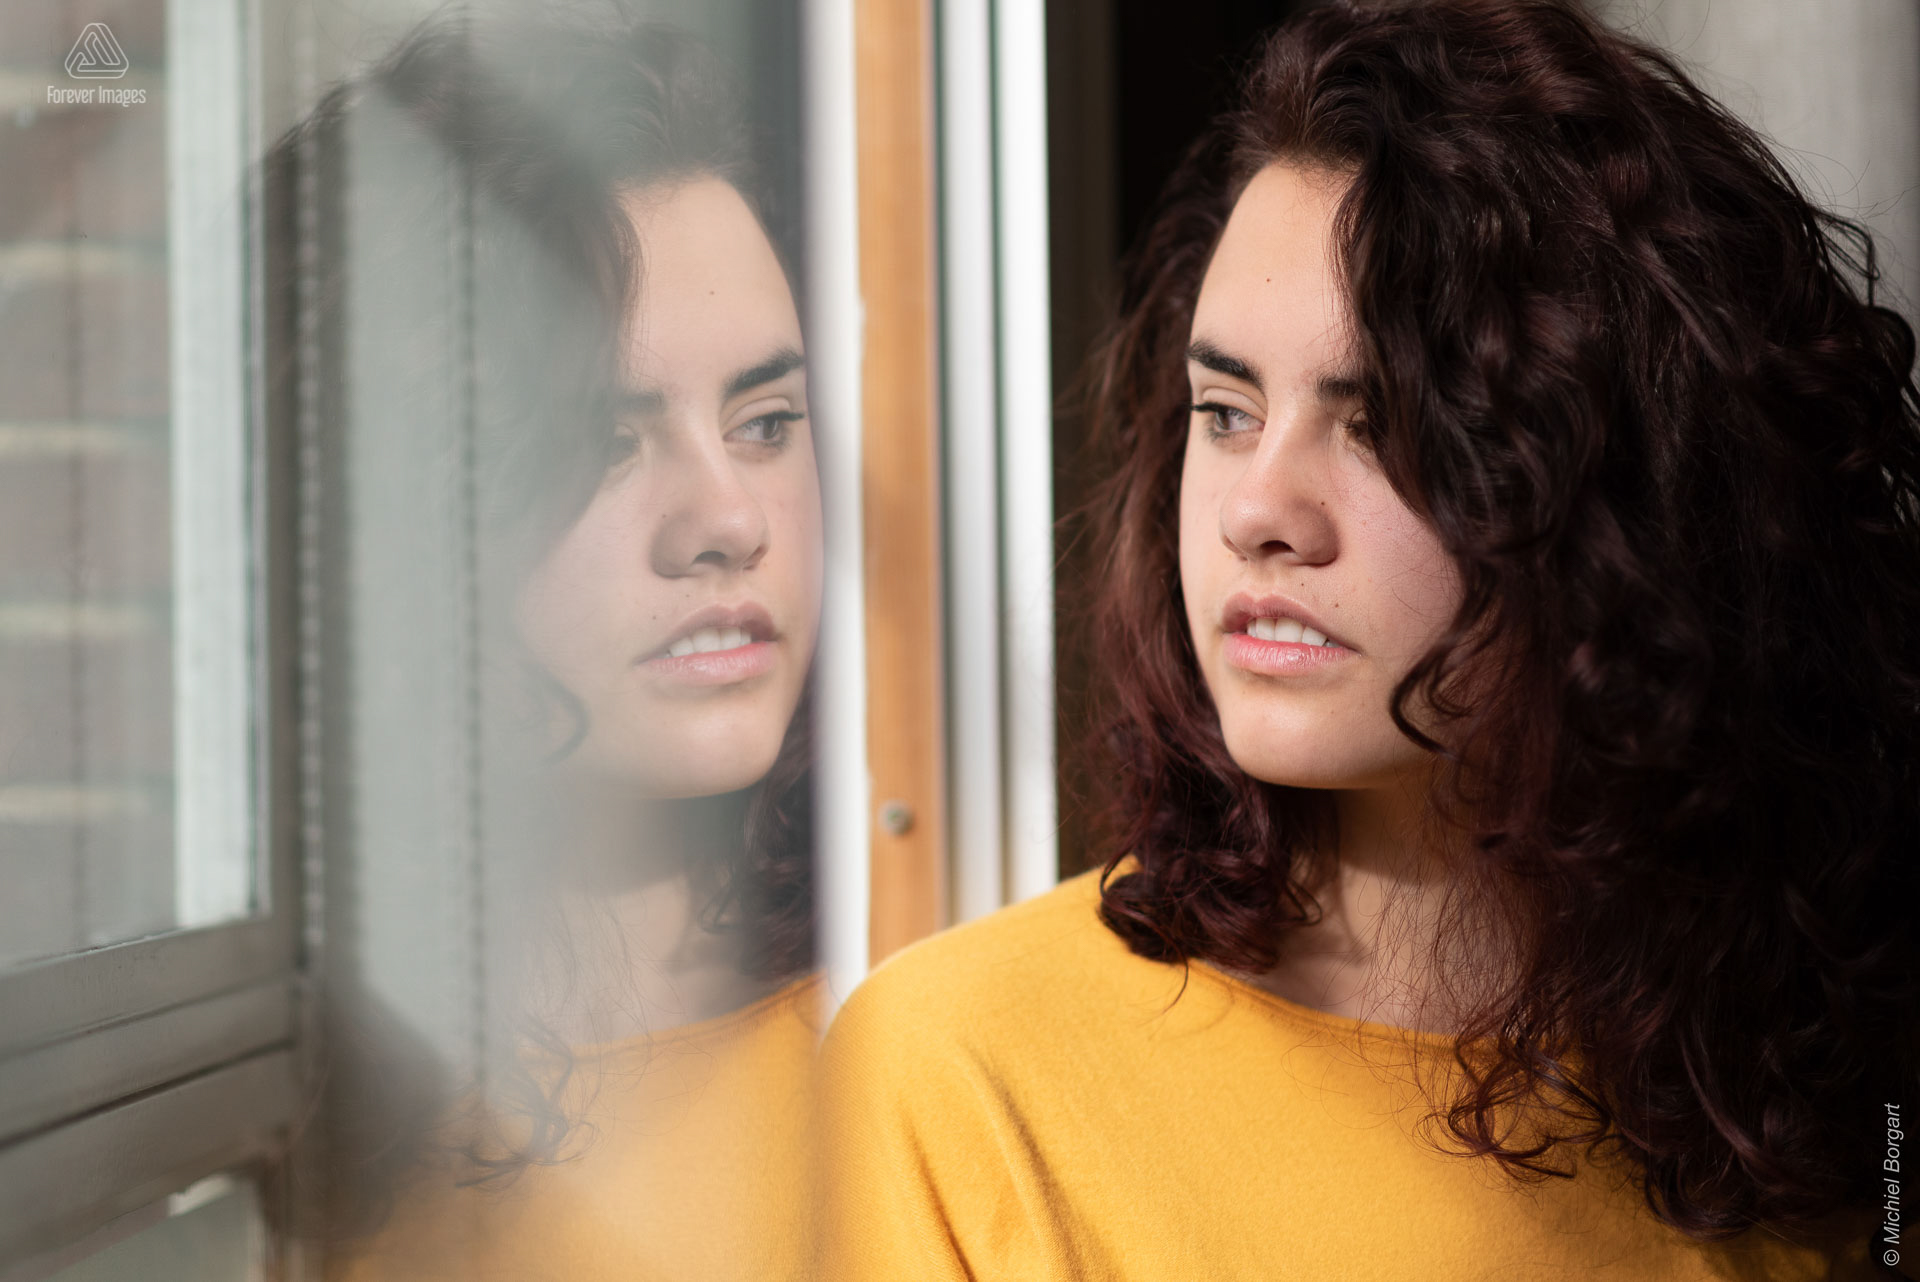 Portretfoto jonge dame kijkt uit raam met reflectie in raam | Tessa Holscher | Portretfotograaf Michiel Borgart - Forever Images.